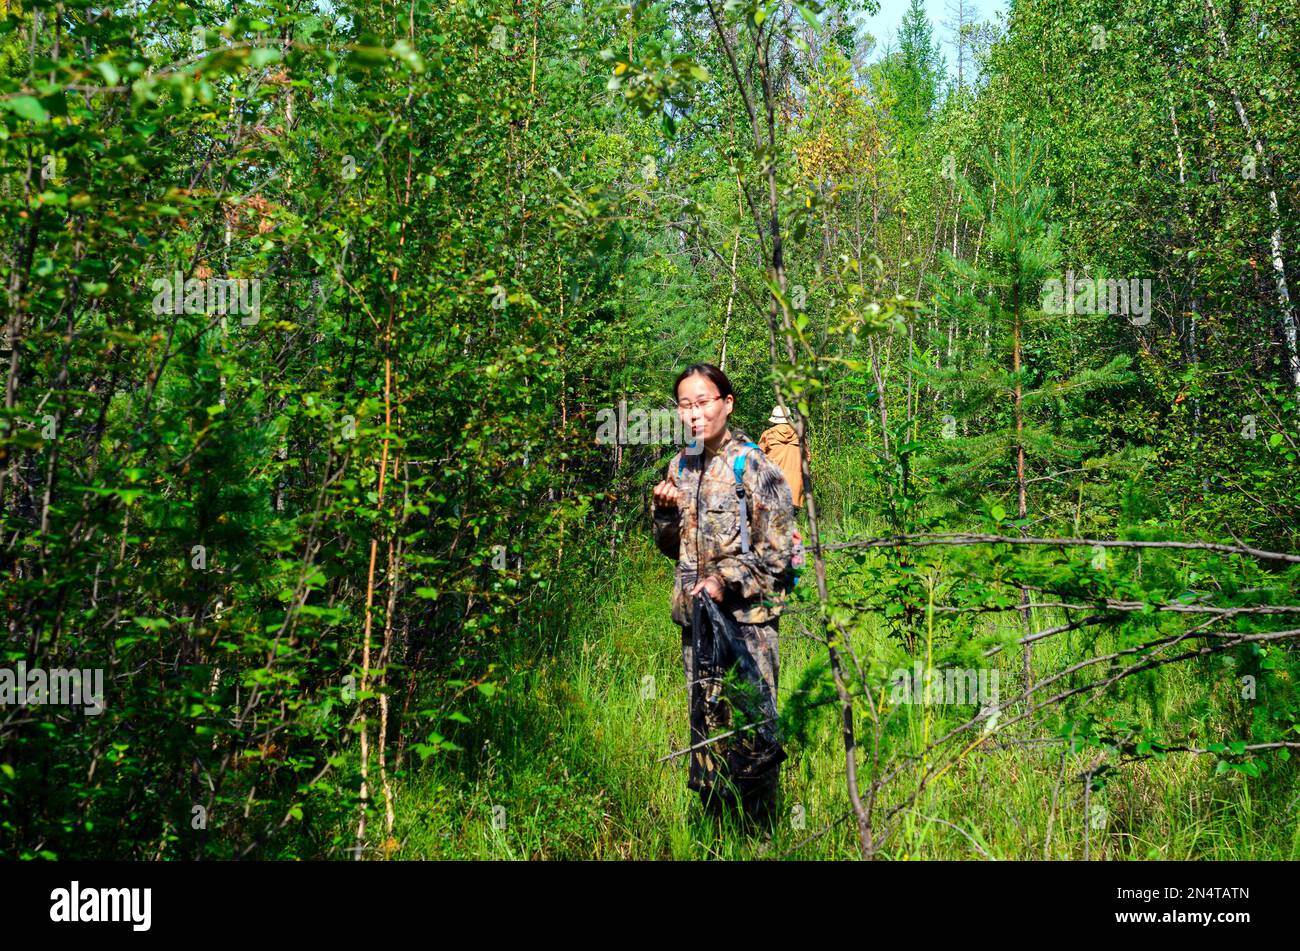 Weibliche Touristen, asiatischer Pilzsammler in Yakutia mit einem Paket in den Händen, der auf einem Pfad im Wald steht und versucht, die wilden Beeren zu probieren. Stockfoto